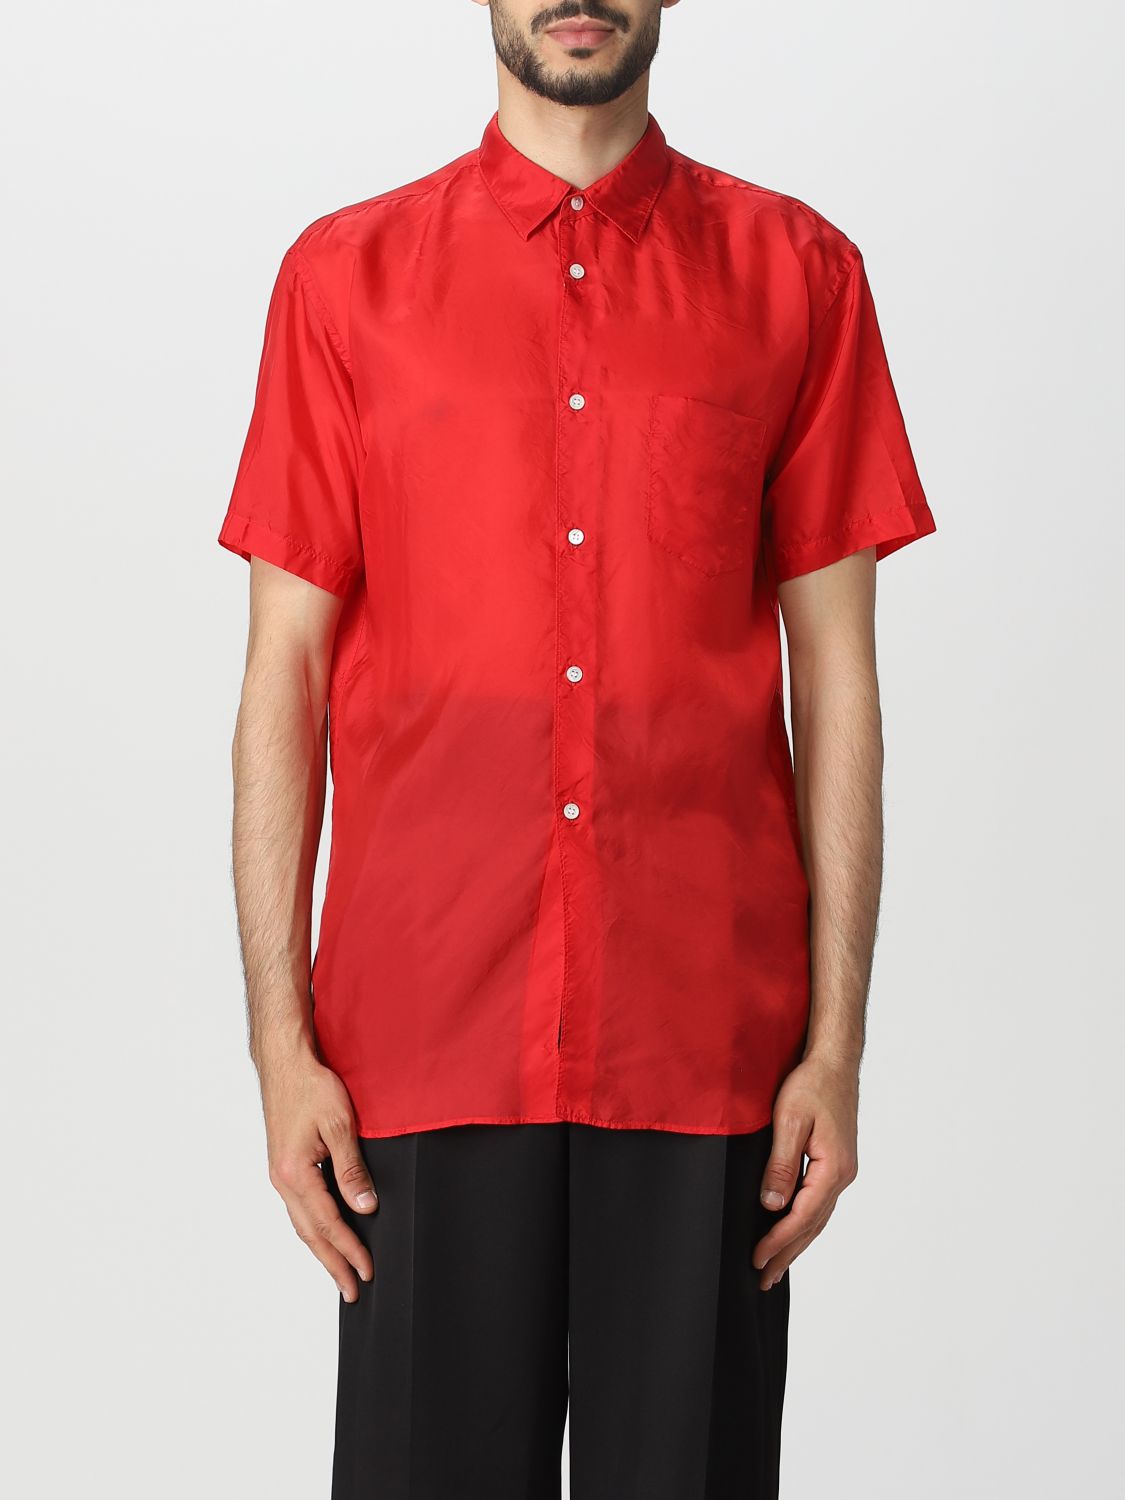 COMME DES GARÇONS SHIRT: shirt for man - Red | Comme Des Garçons Shirt ...